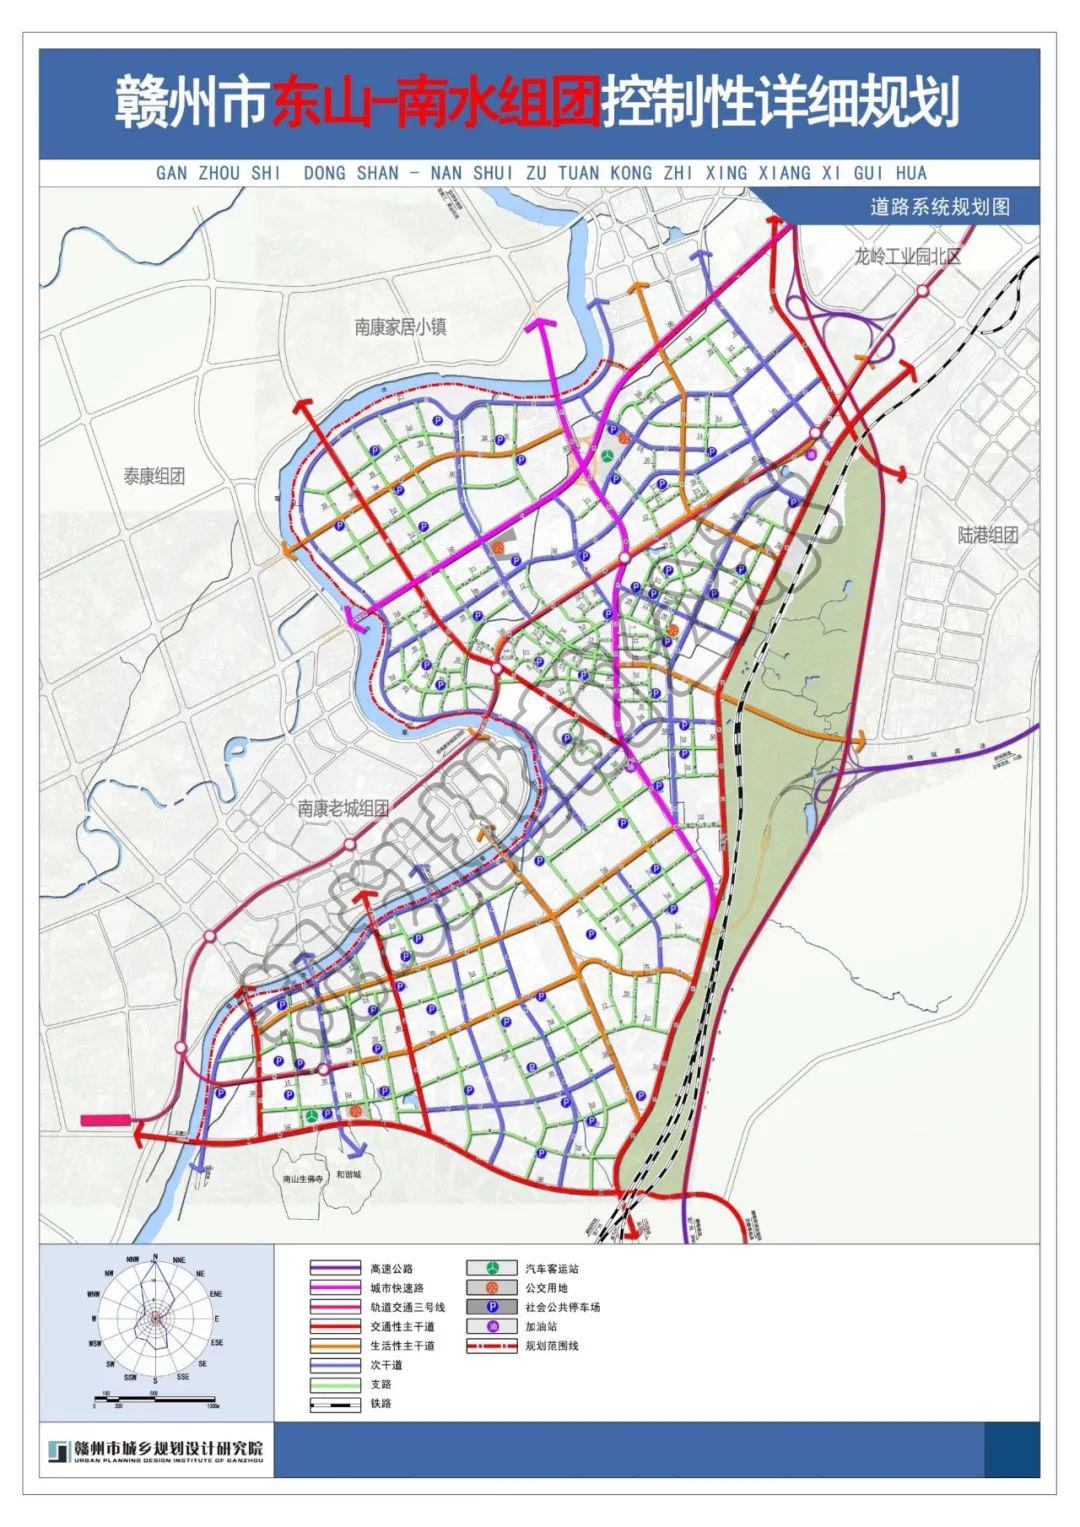 景泰路:交通性城市主干路,道路红线 40 米,是连接陆港组团,东山-南水